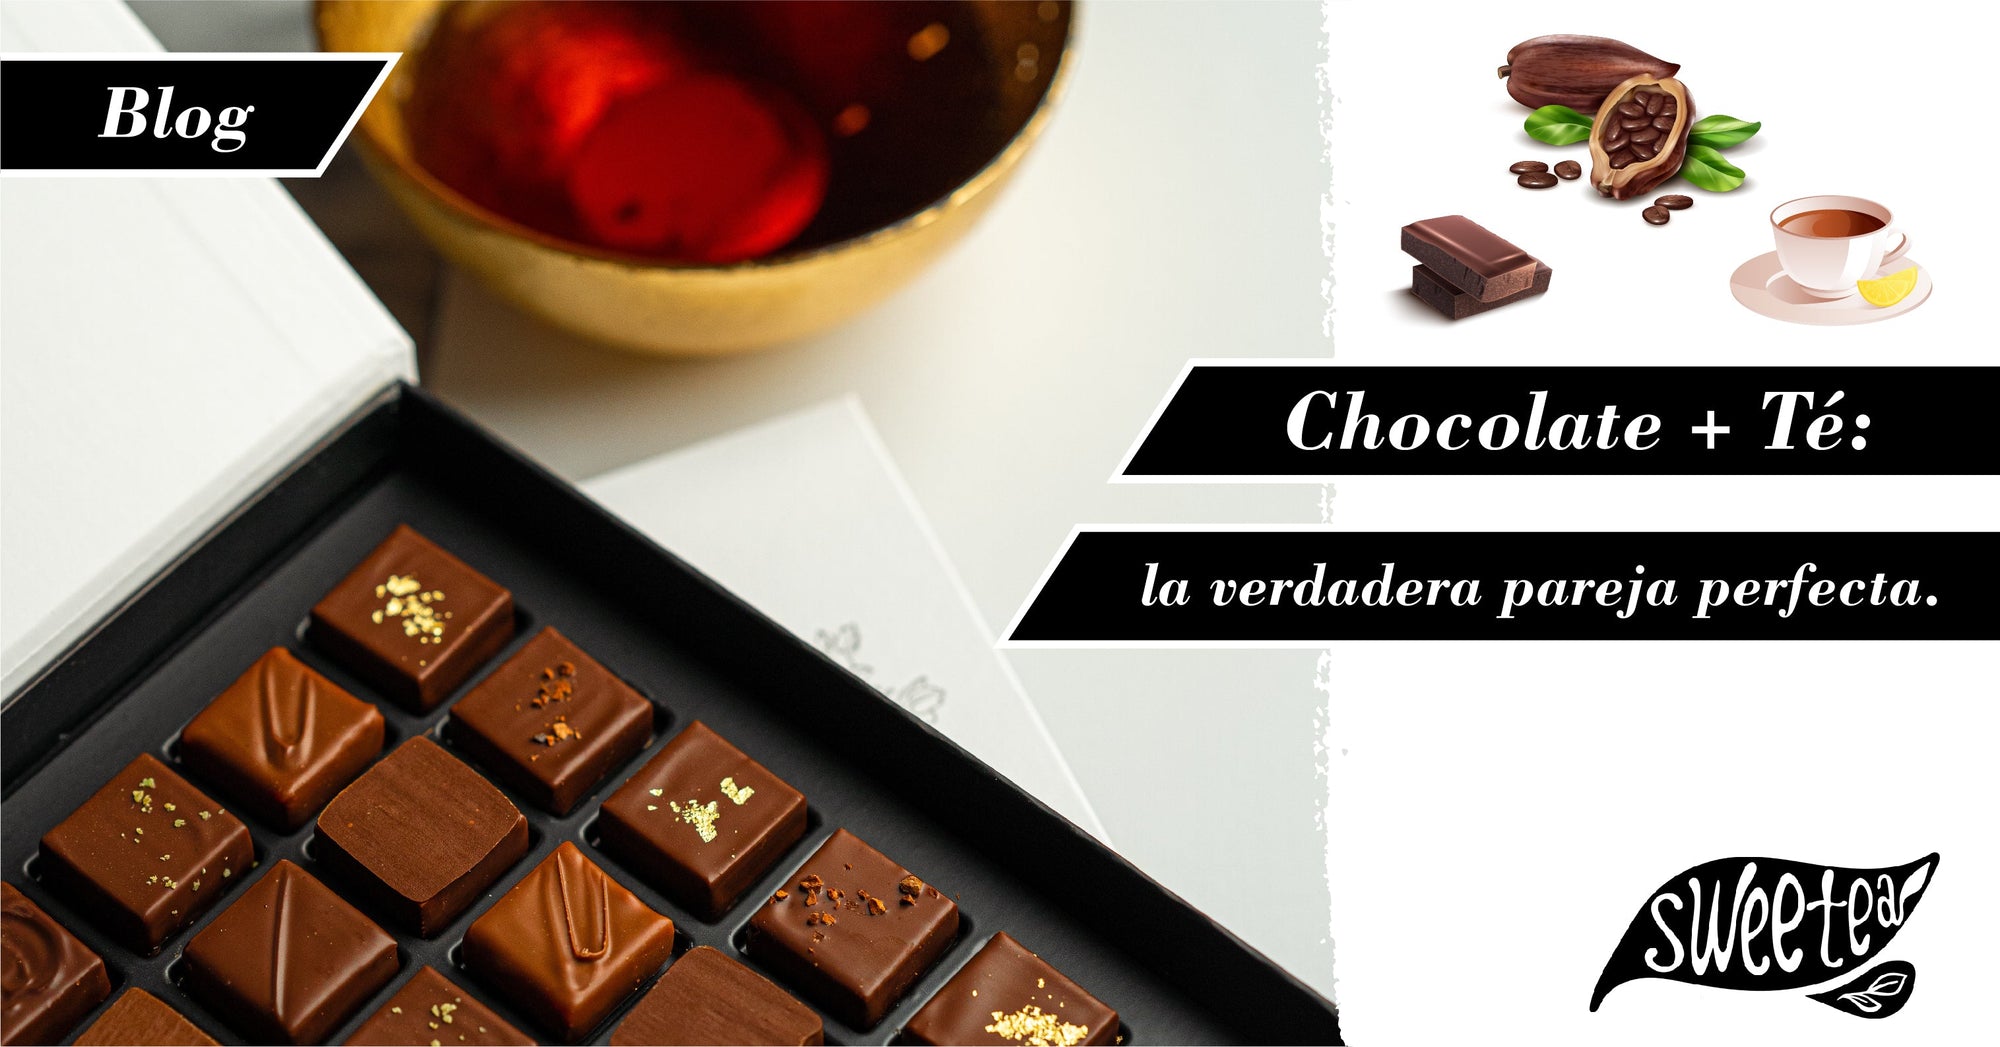 Chocolate y Té: la verdadera “pareja perfecta” que estabas buscando